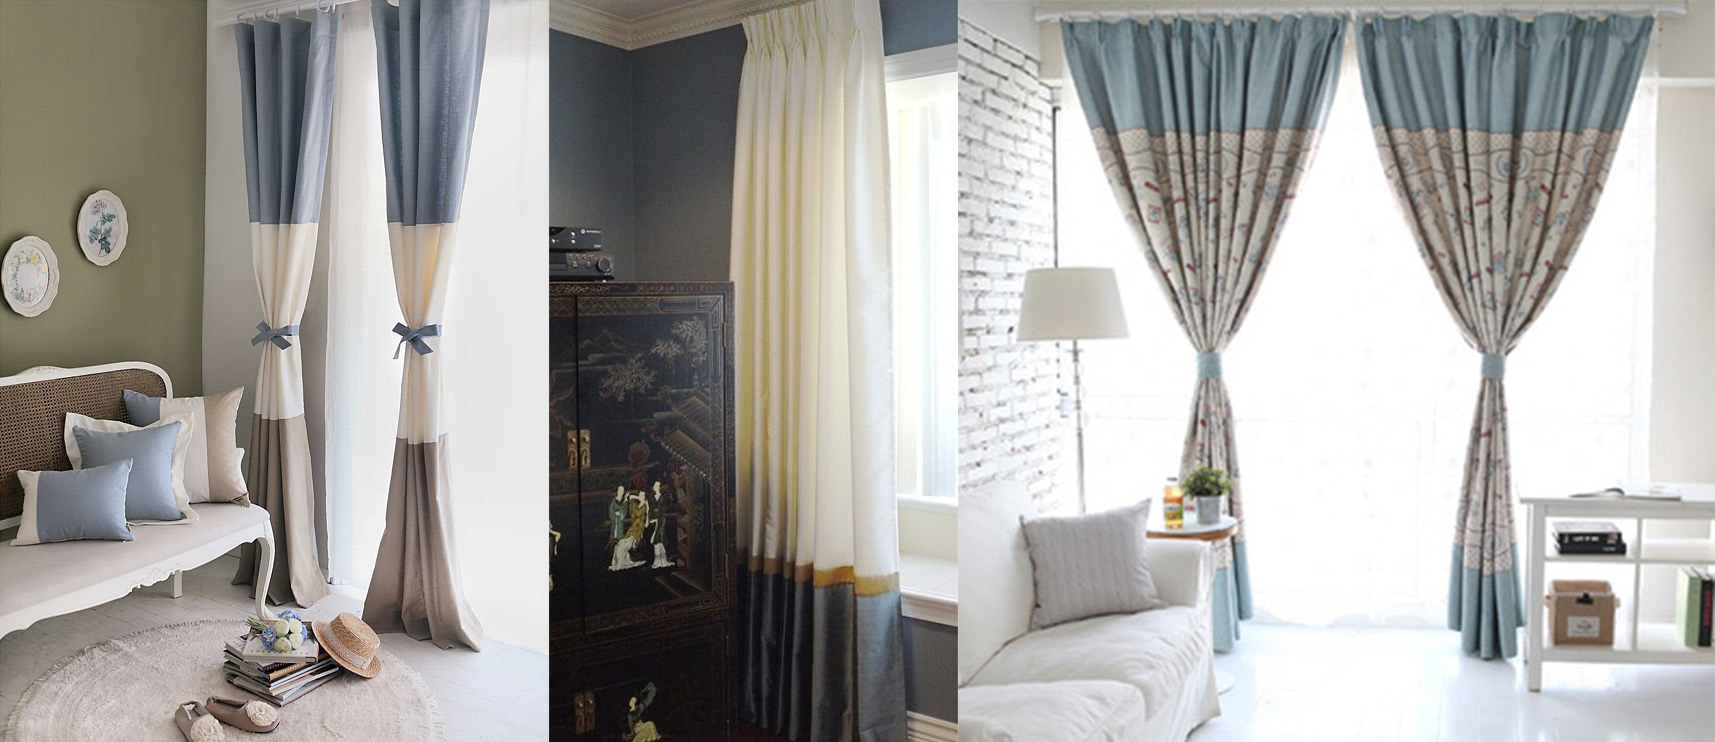 Двойные шторы: в гостиную фото, как сшить двухсторонние, комбинированные из разных тканей, венге в интерьере